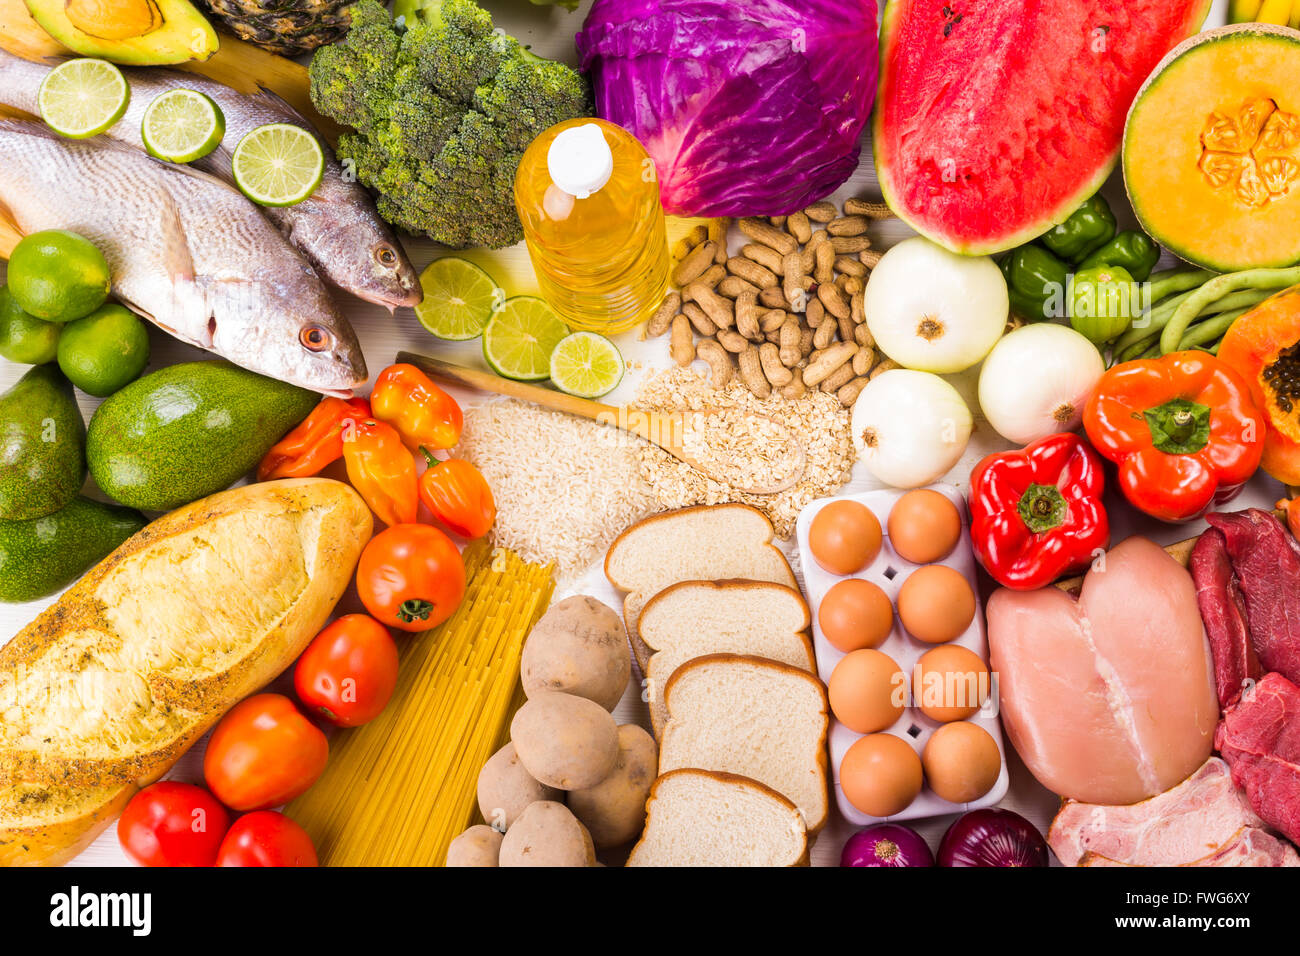 Groupe d'aliments sains, l'analyse comprend des protéines, hydrates de carbone, les bons gras, les fruits et légumes. Banque D'Images